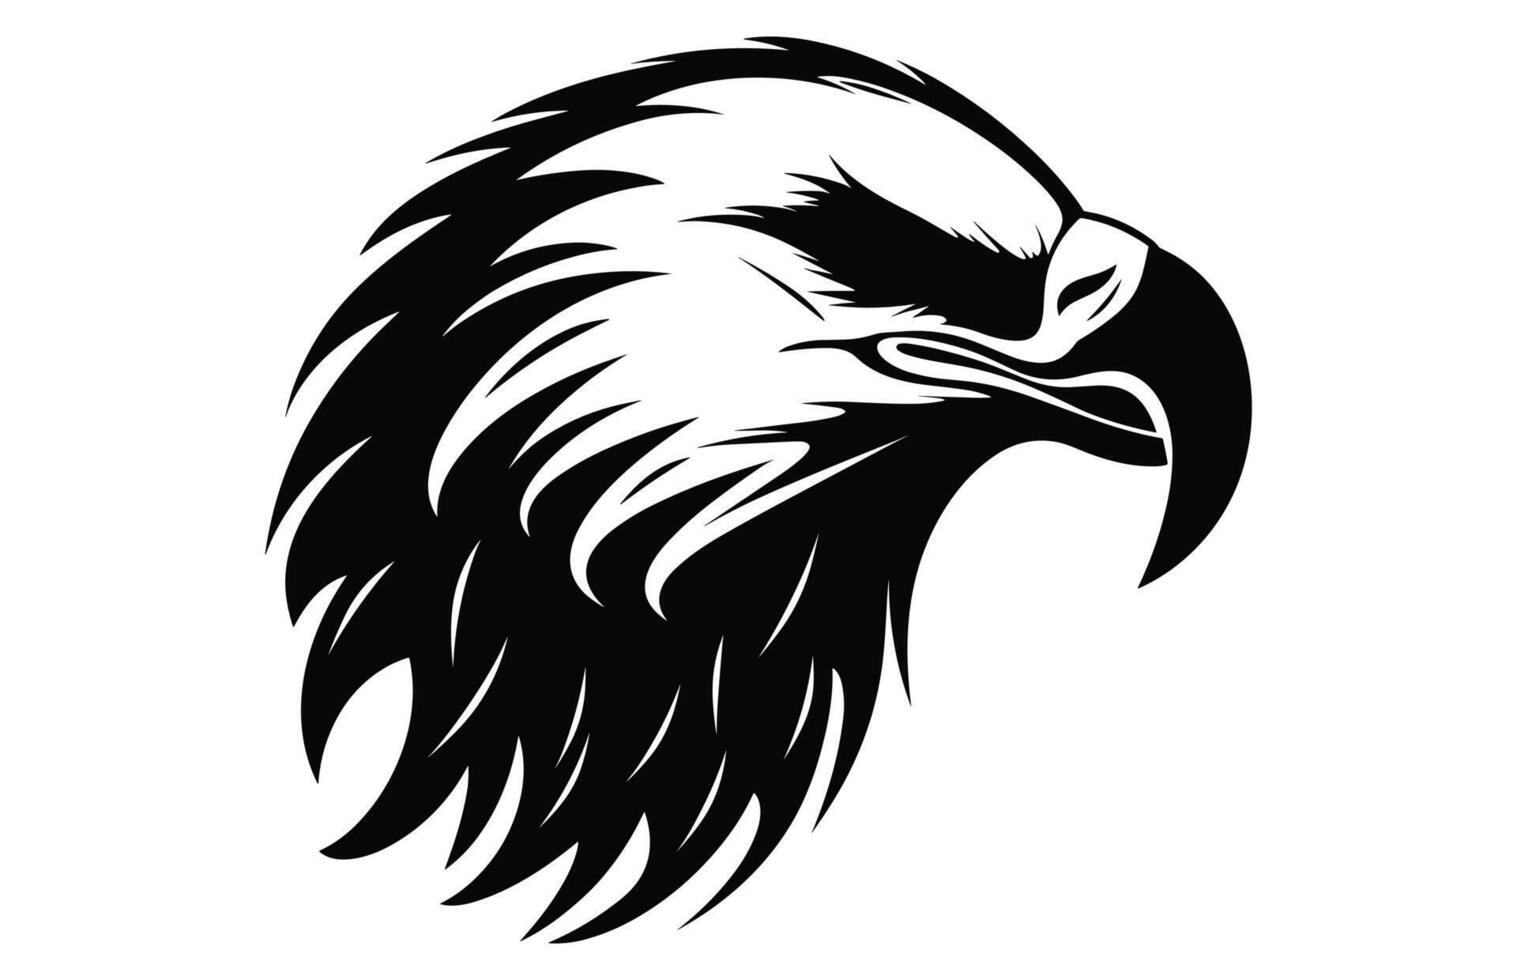 fliegend kahl Adler schwarz und Weiß Silhouette Vektor, ein kahl Adler schwarz Silhouette Vektor isoliert auf ein Weiß Hintergrund